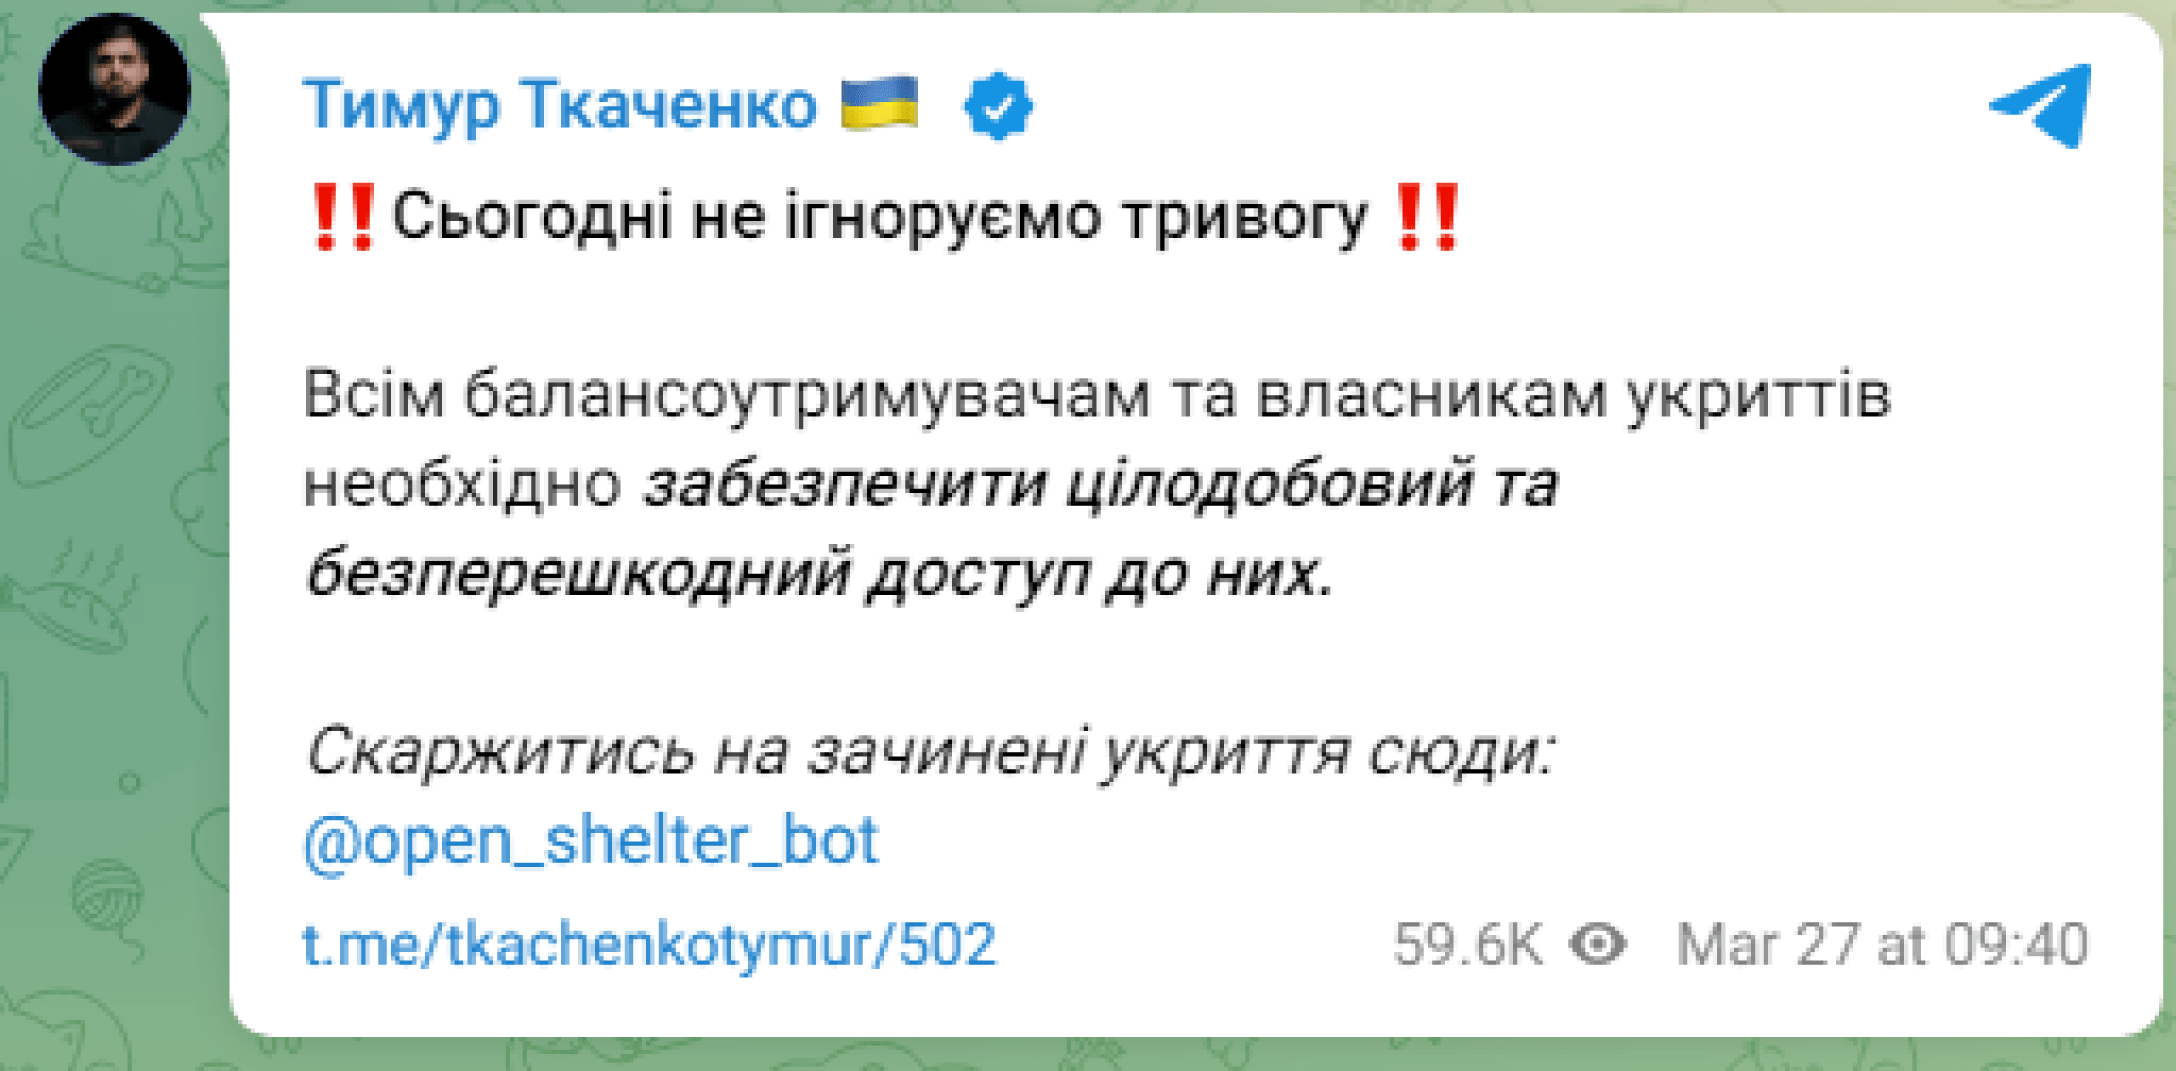 «Не ігноруйте сьогодні тривогу» - в ЗСУ прокоментували цей заклик міністра Ткаченка